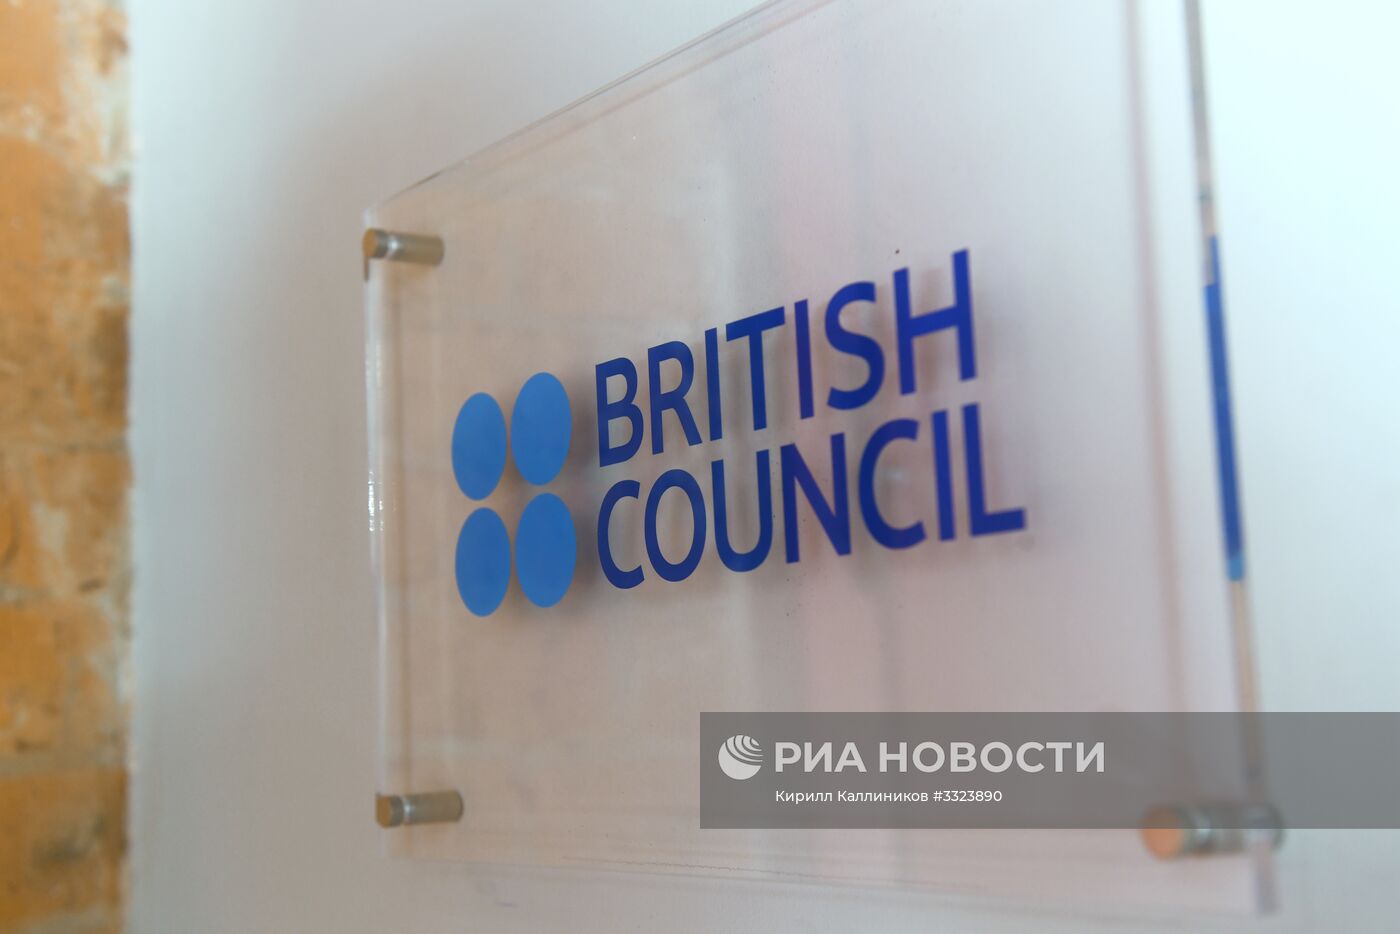 "Британский совет" в Москве